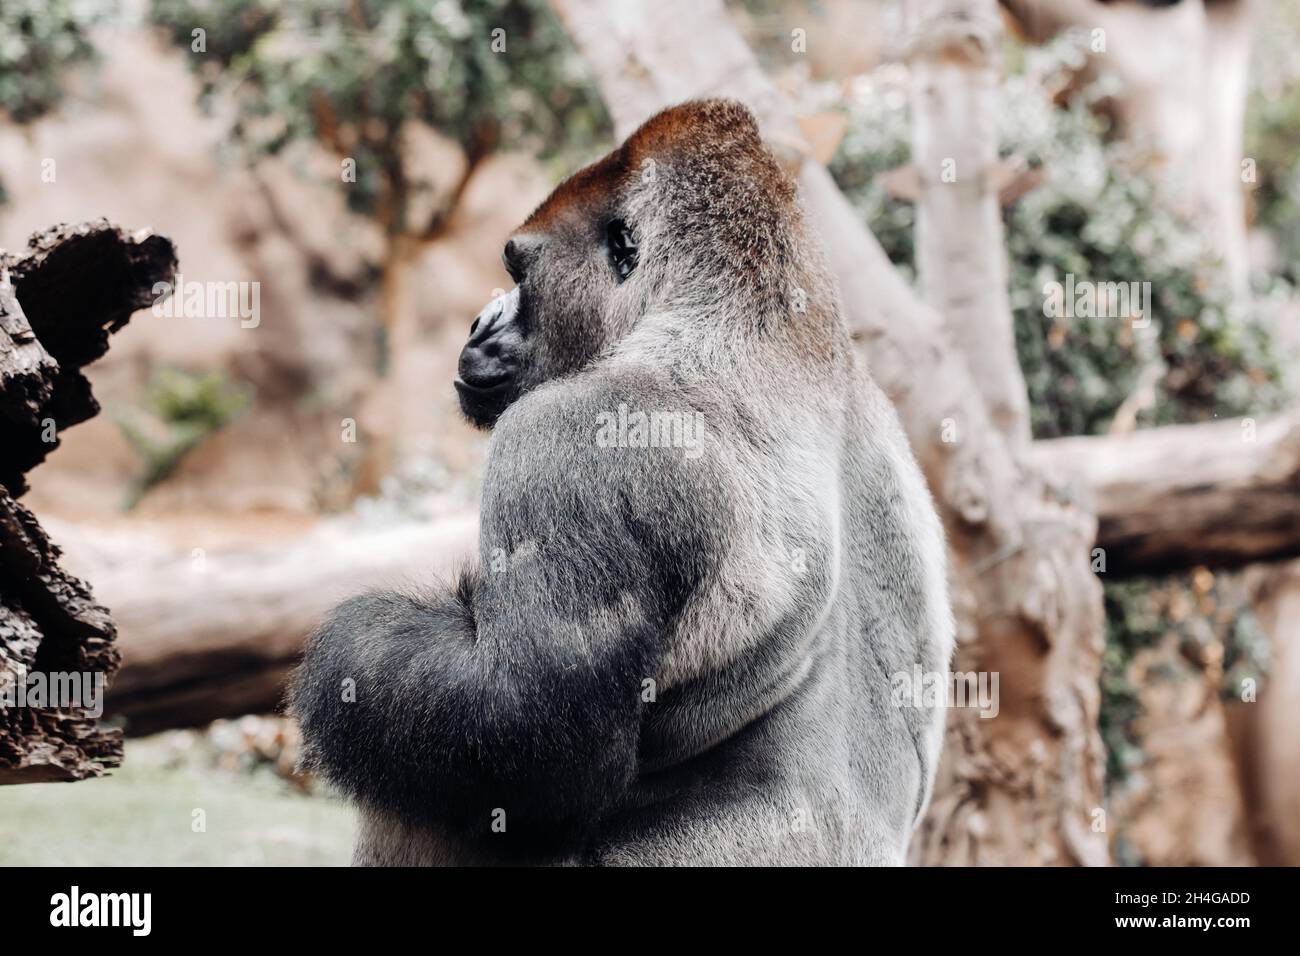 Un gorilla lowland occidentale con una pouty Expression.The gorilla mi guarda. Foto Stock